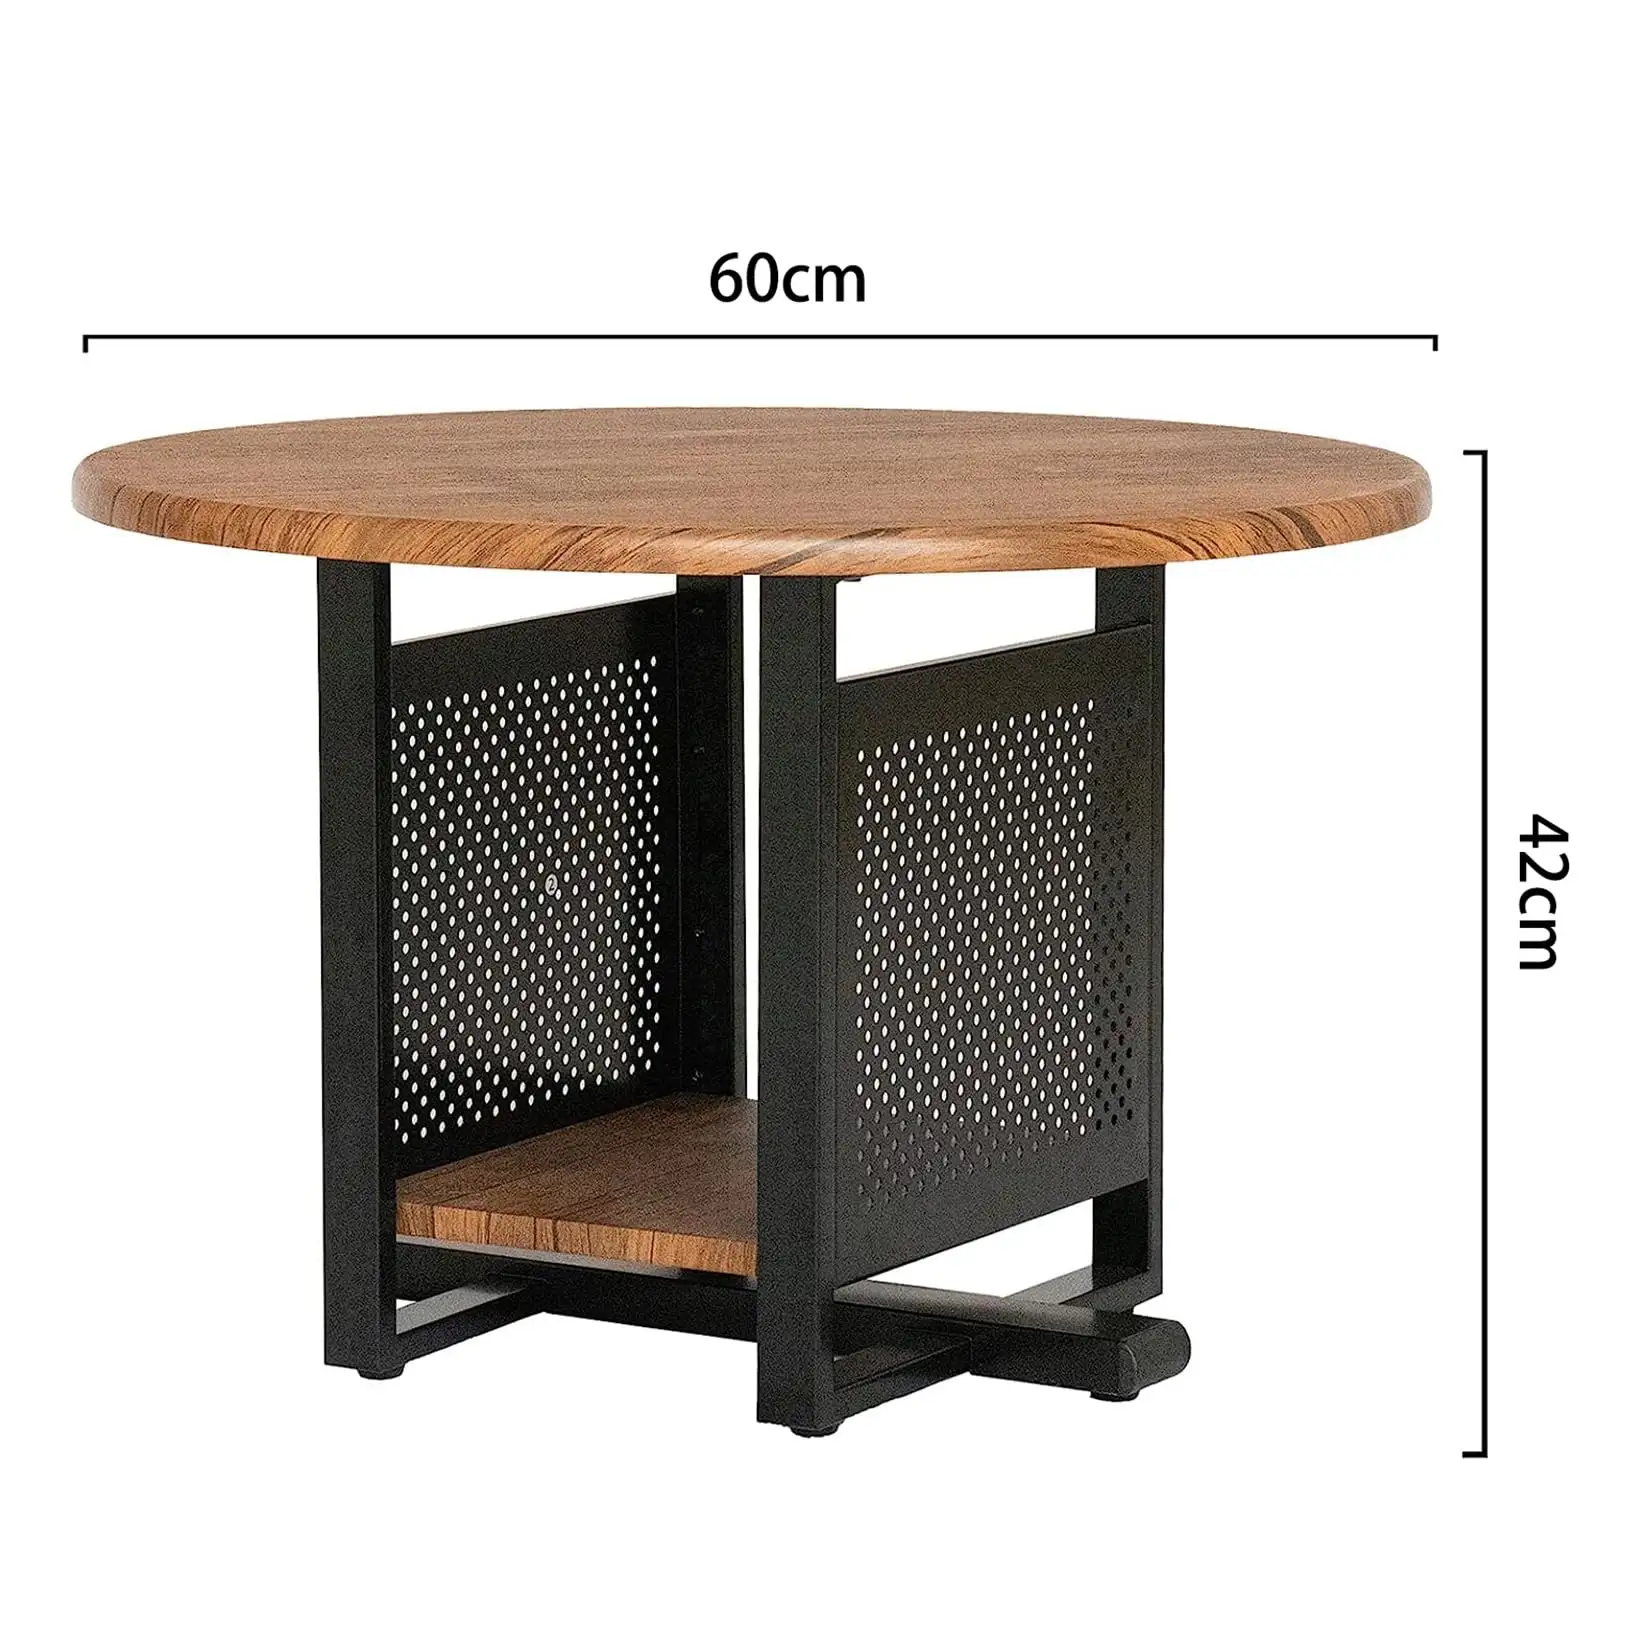 Table ronde en bois en gros 2 étages, design de style pastoral, l'espace de stockage suivant est une application multi-scènes semi-fermée